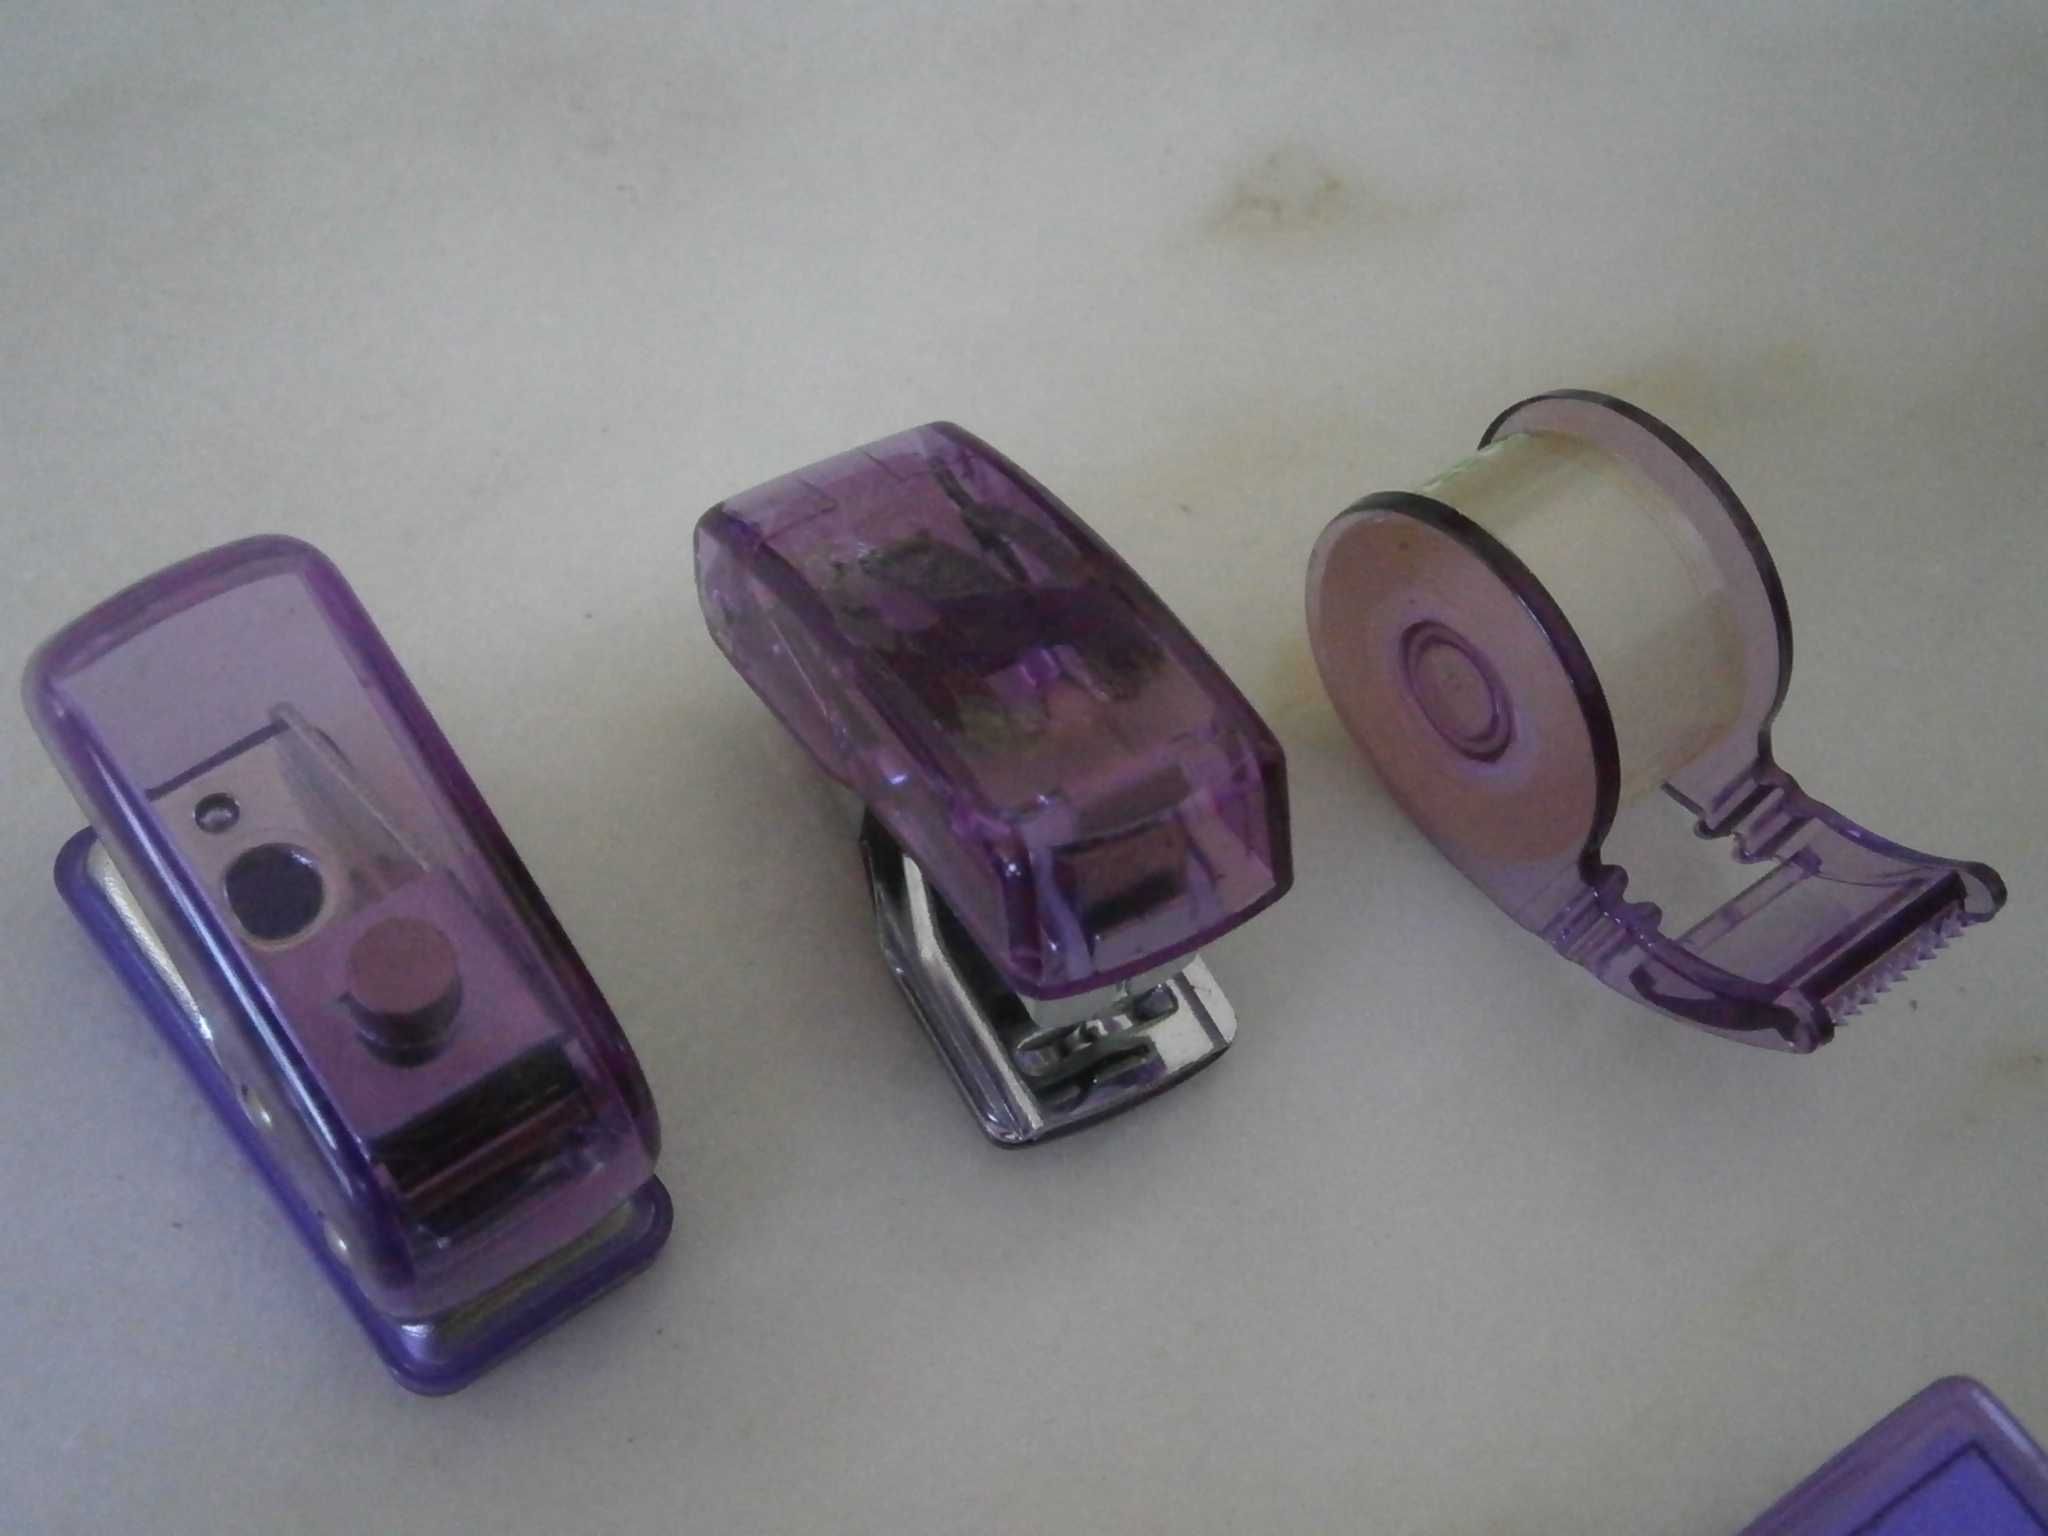 2 Porta chaves (1 miniatura bloco+1 miniatura mochila), nunca usados